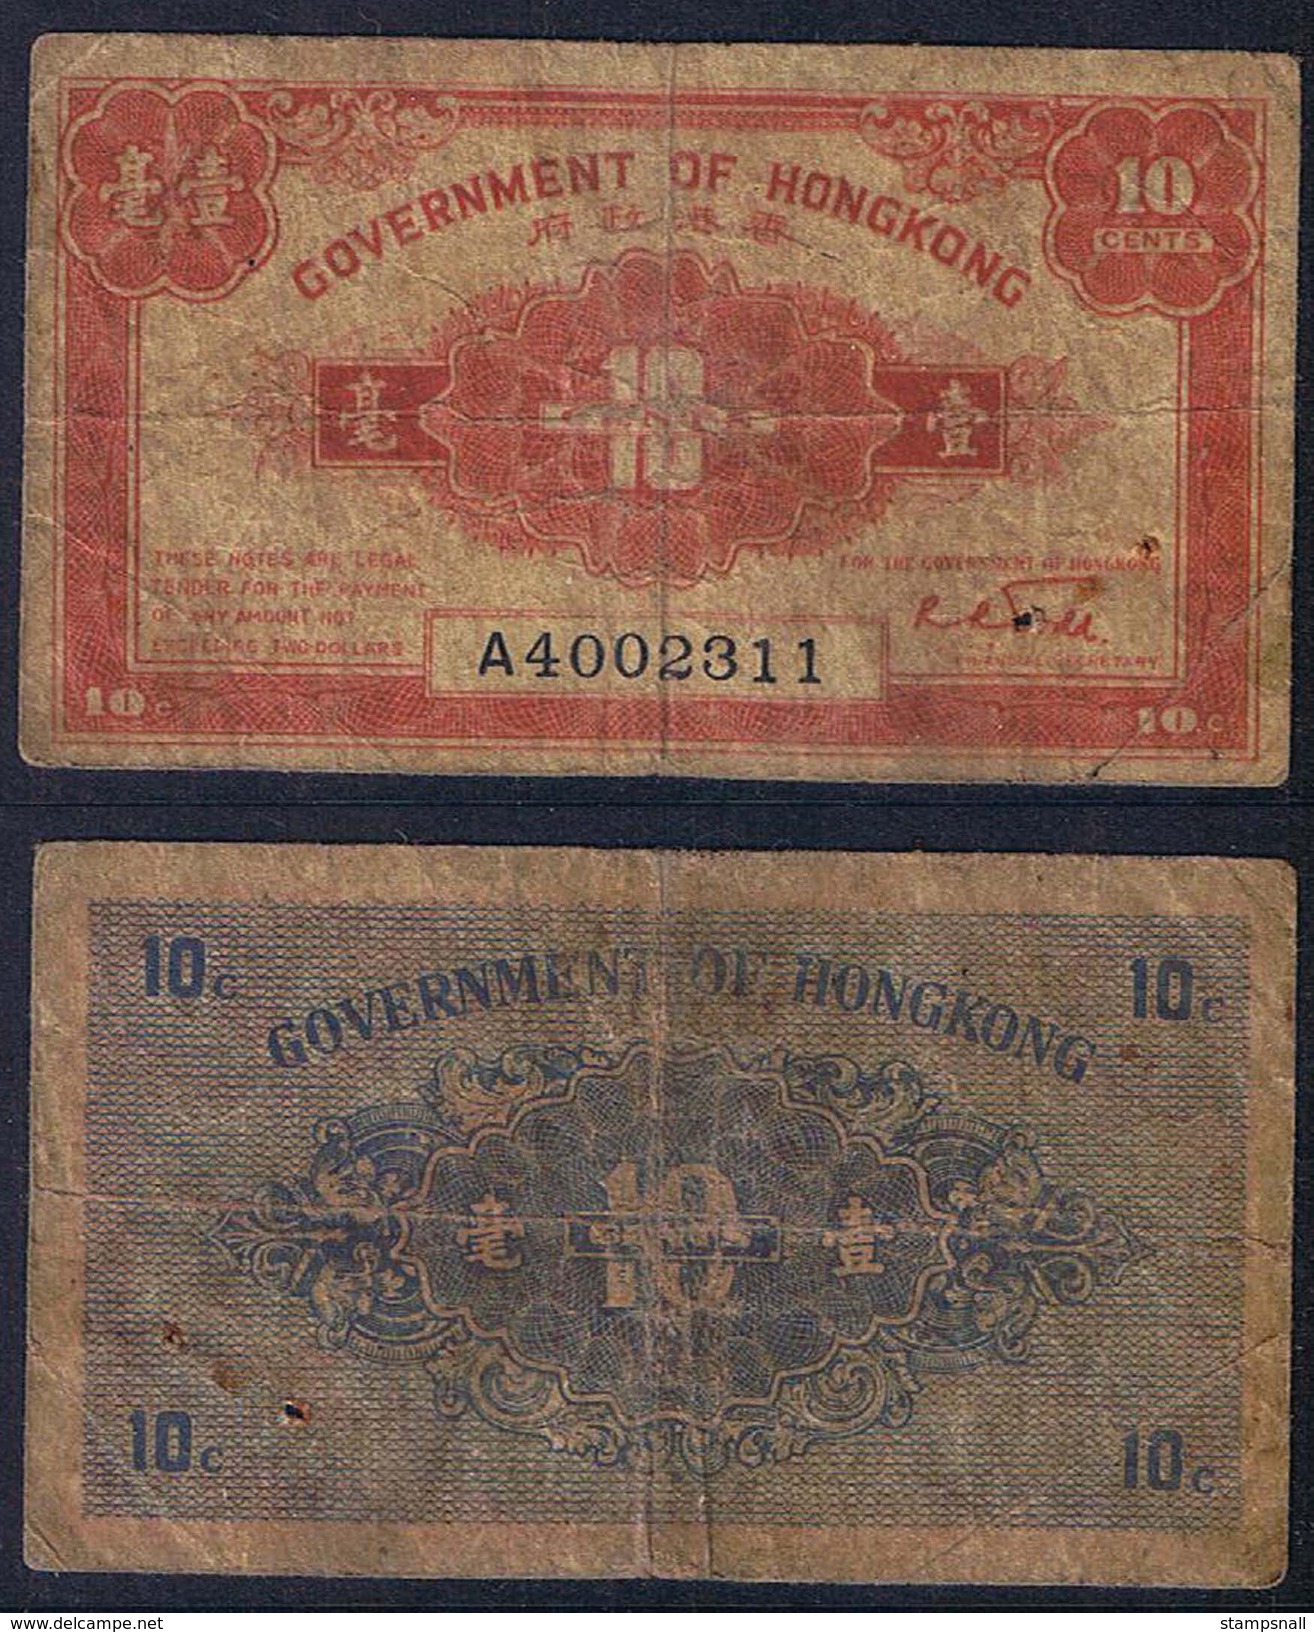 Banknote HONG KONG 10 Cents 1941 Fair S/N A4002311 - HKG#003 - Hong Kong